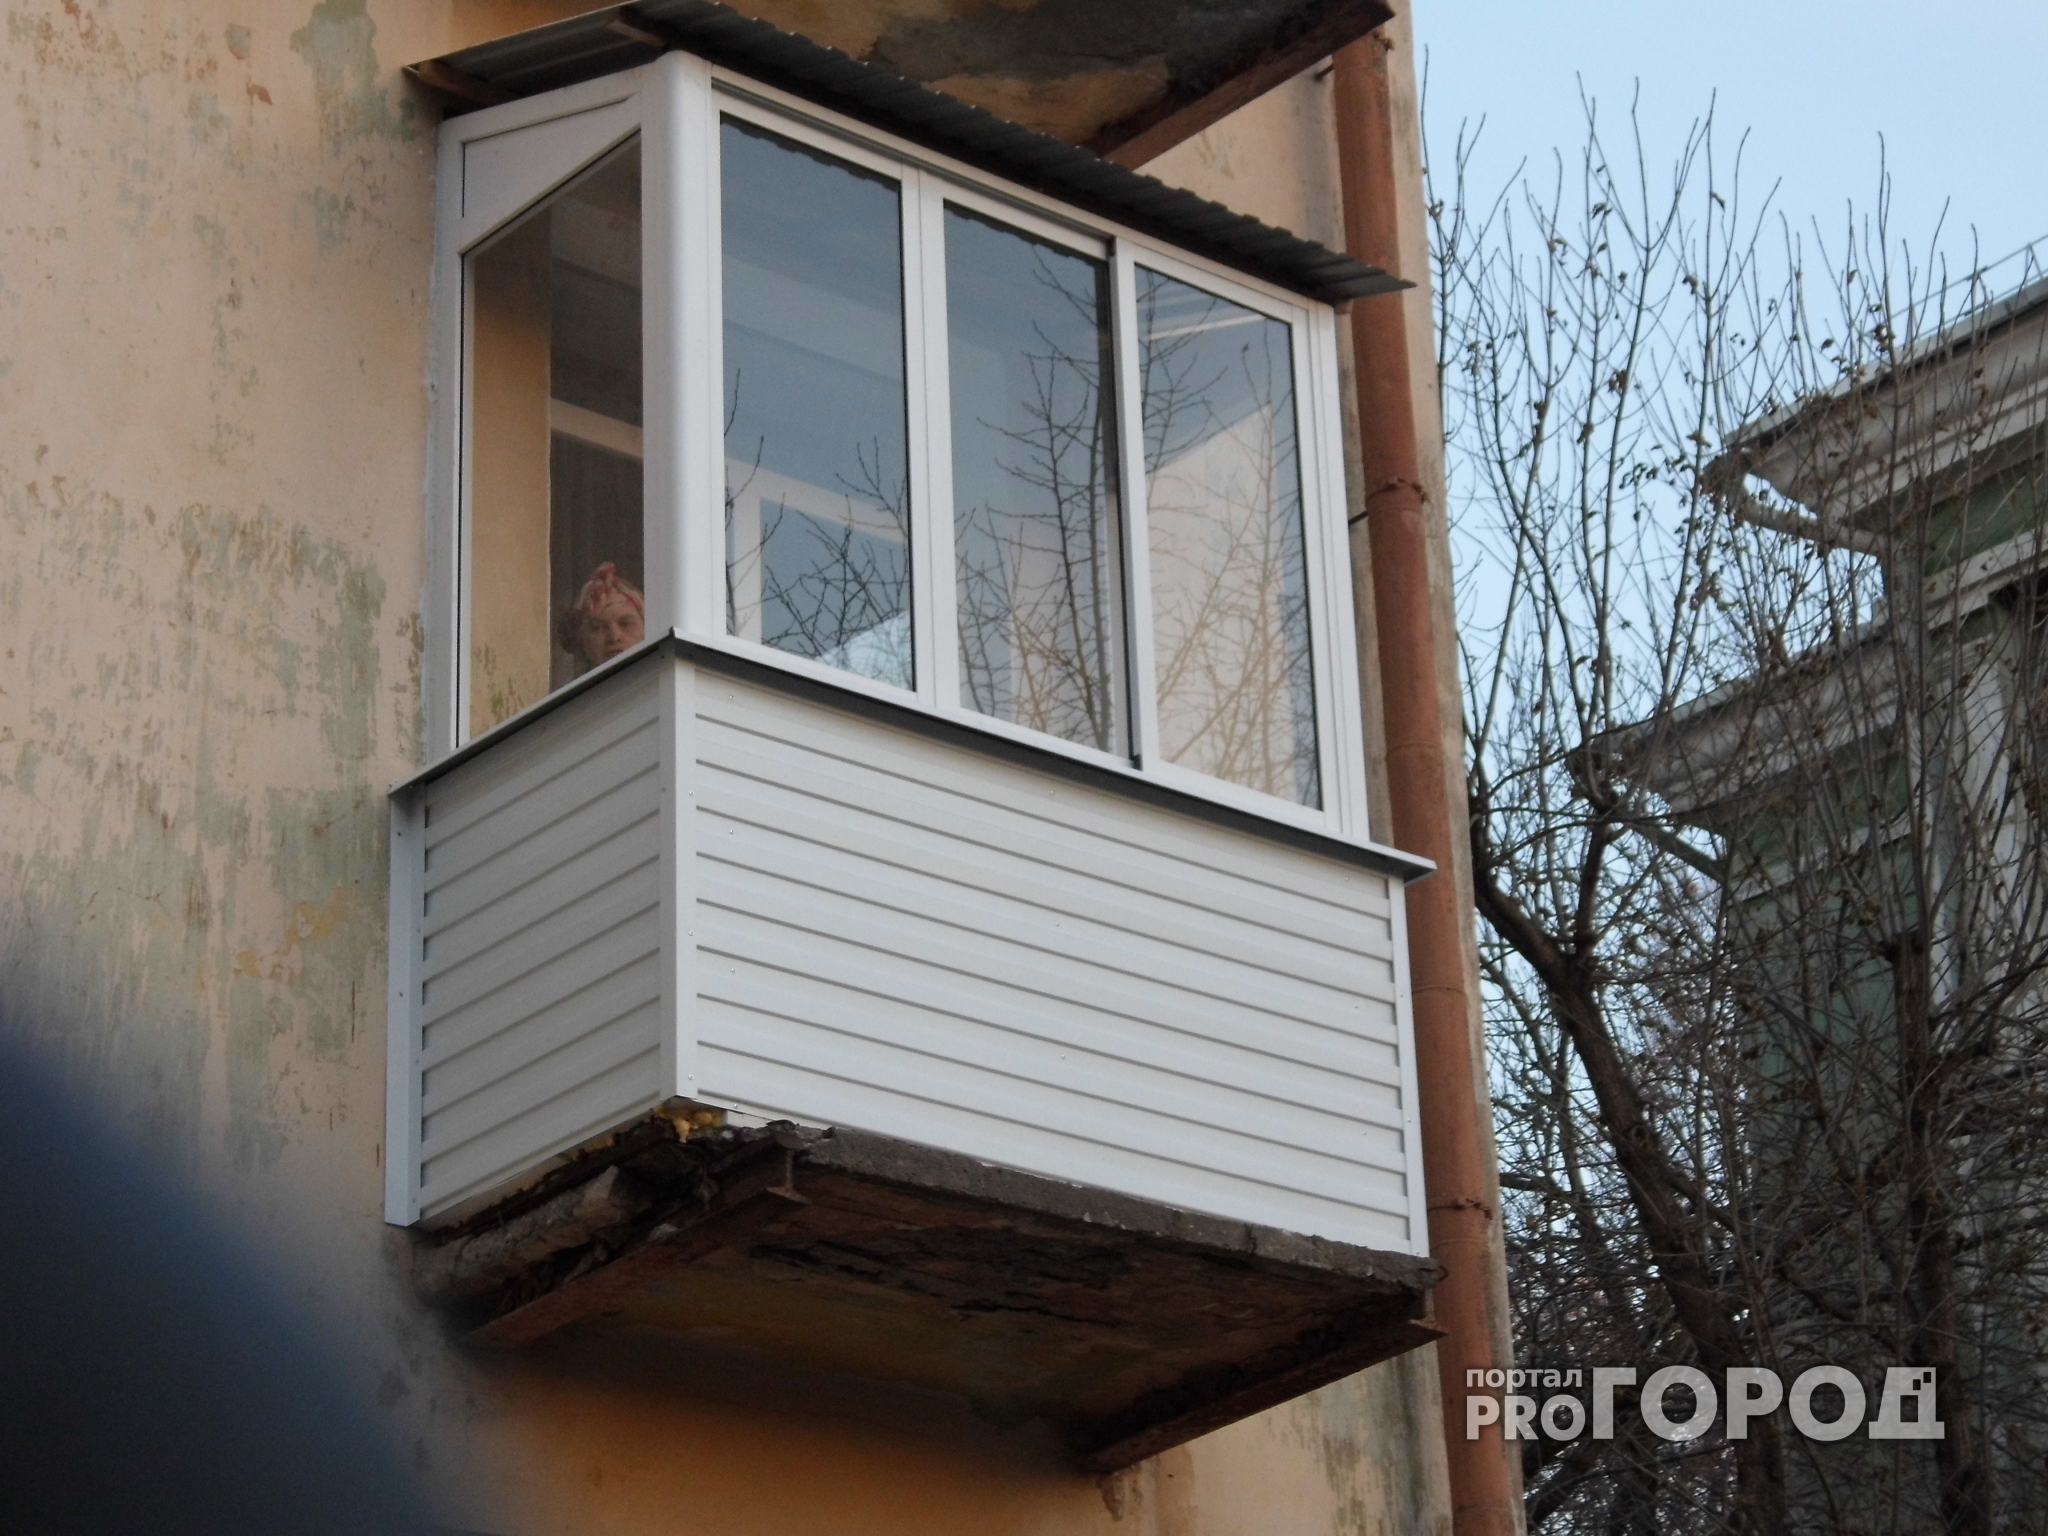 В Сыктывкаре пьяный мужчина пытался выкинуть младенца с балкона